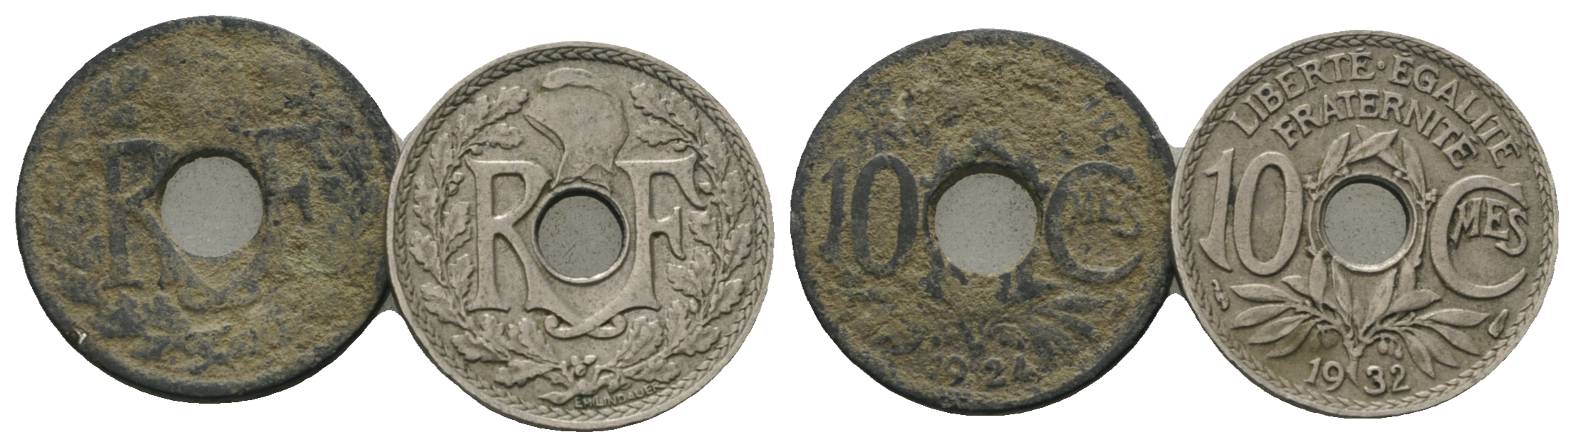  Frankreich, 2 Kleinmünzen (1924/1932)   